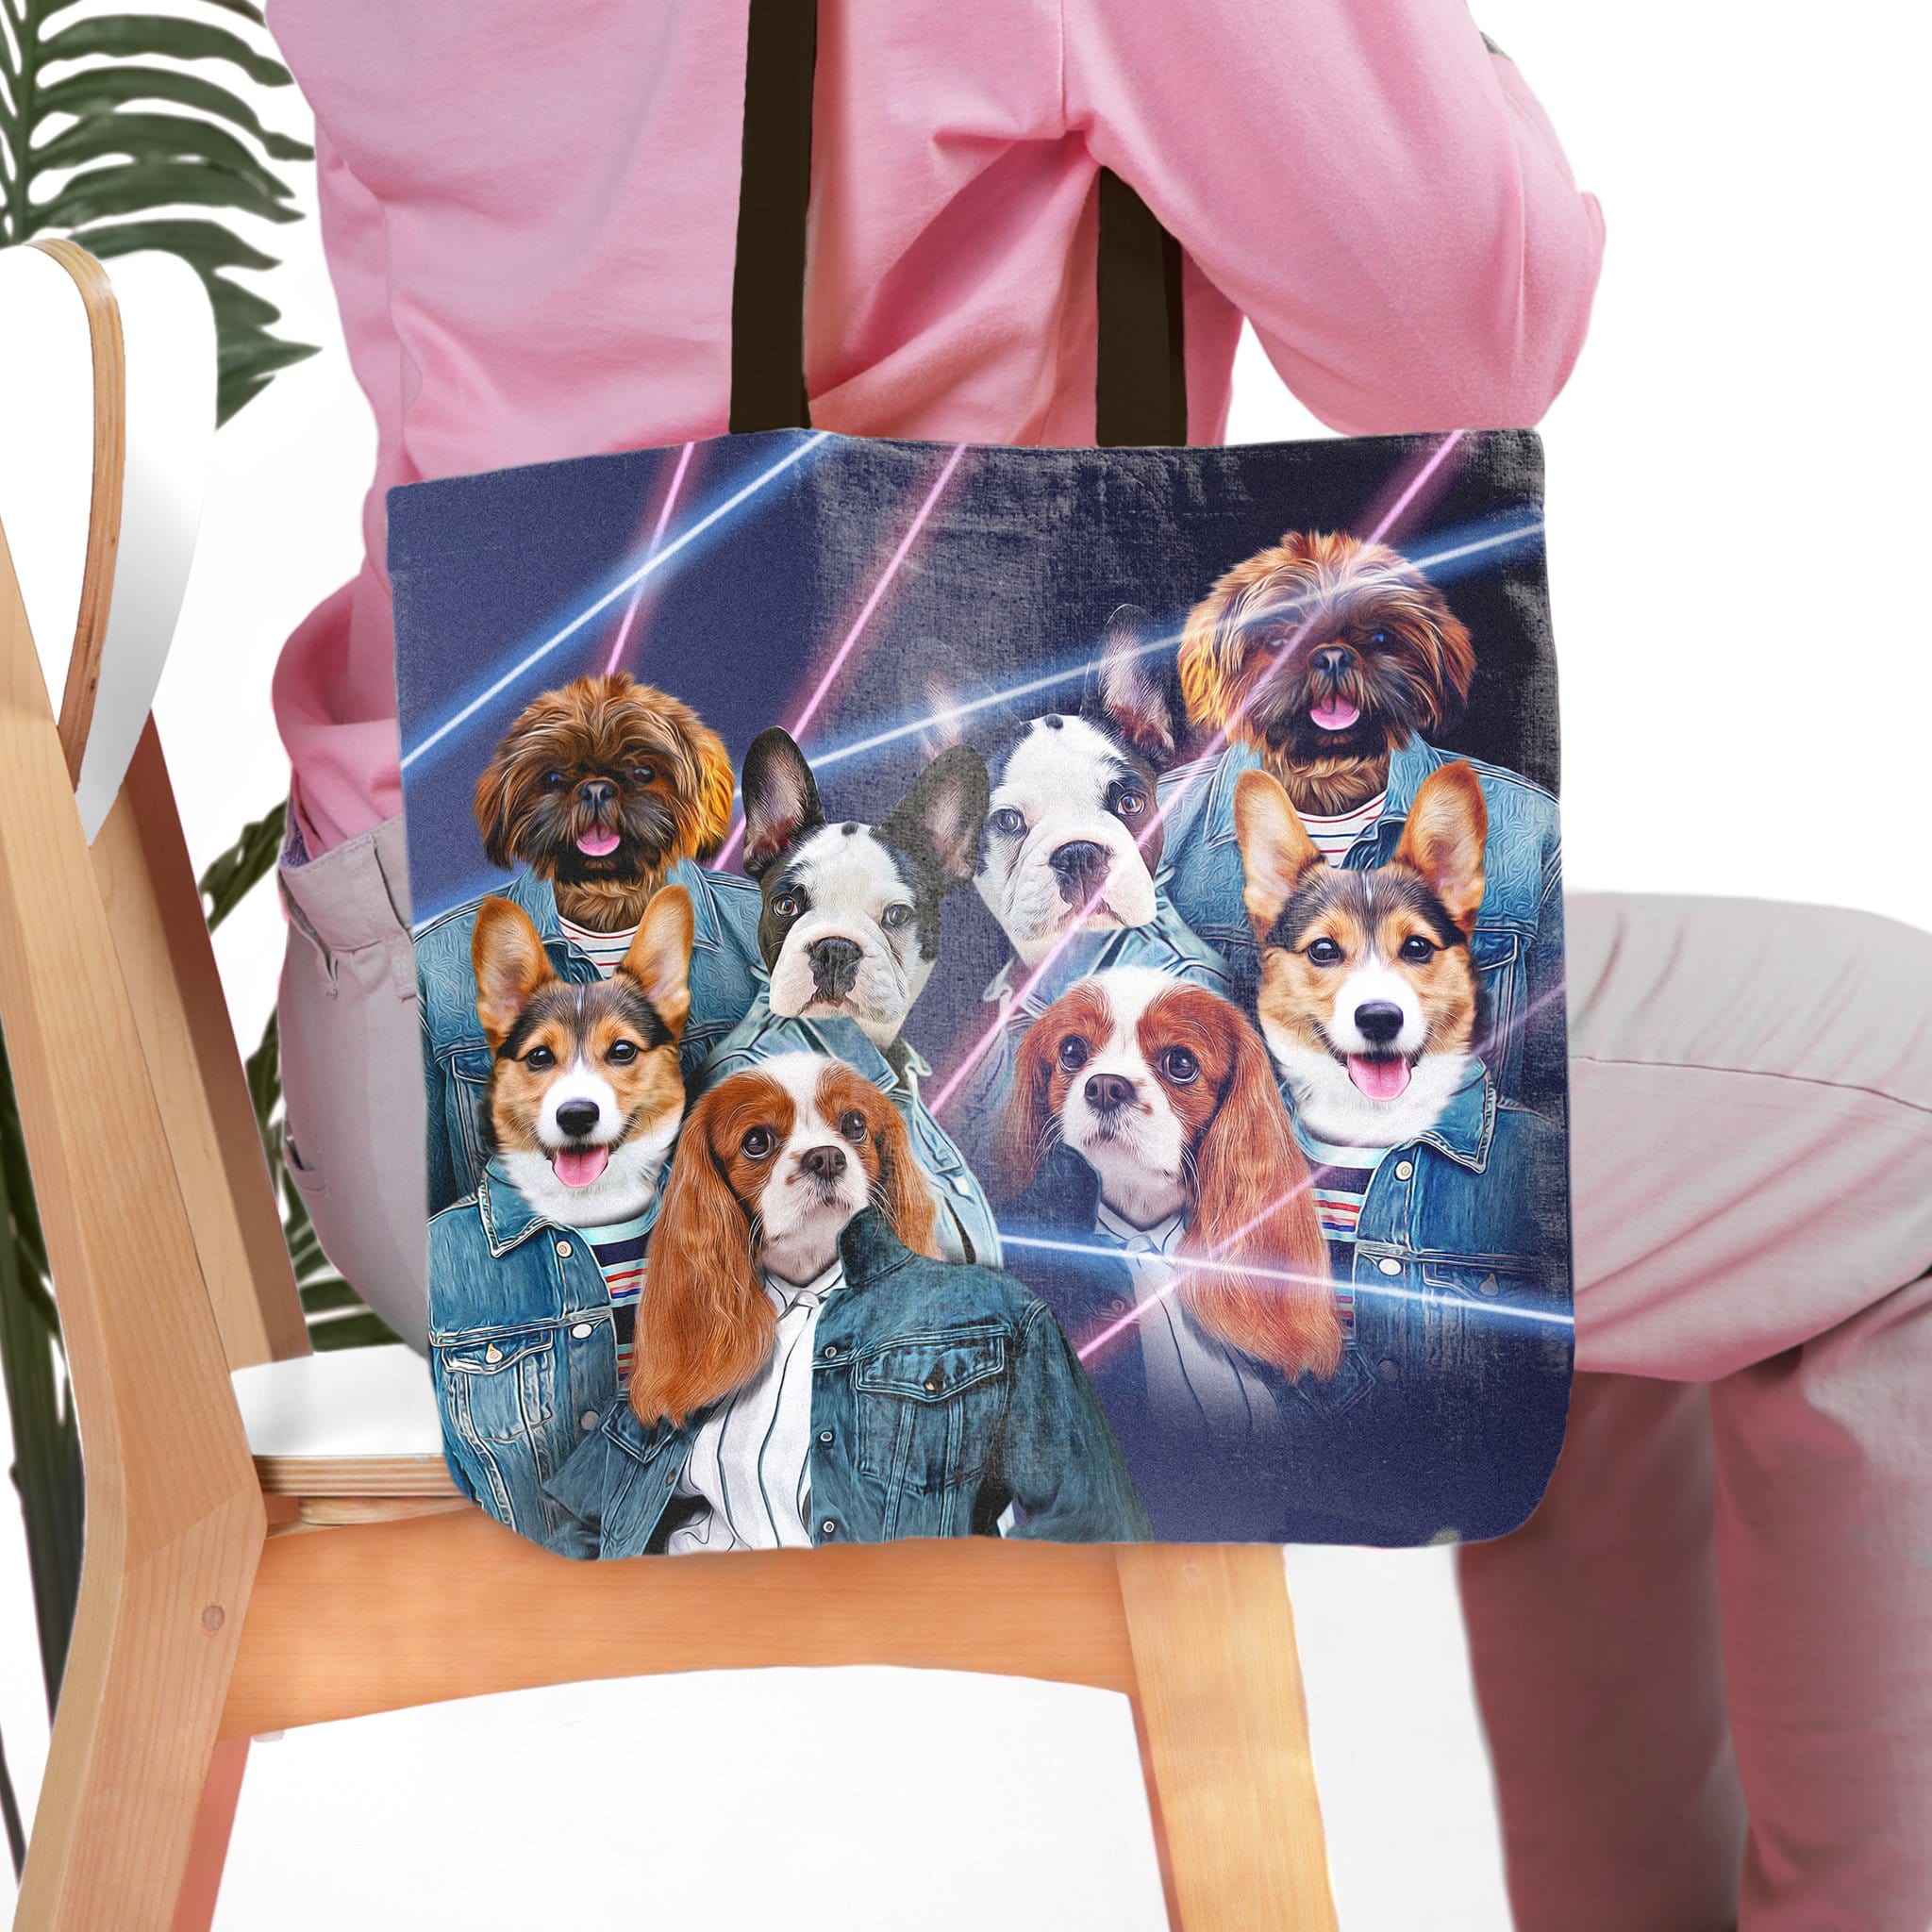 Bolsa de tela personalizada para 4 mascotas &#39;Retrato Lazer de los años 80 (4 hembras)&#39;